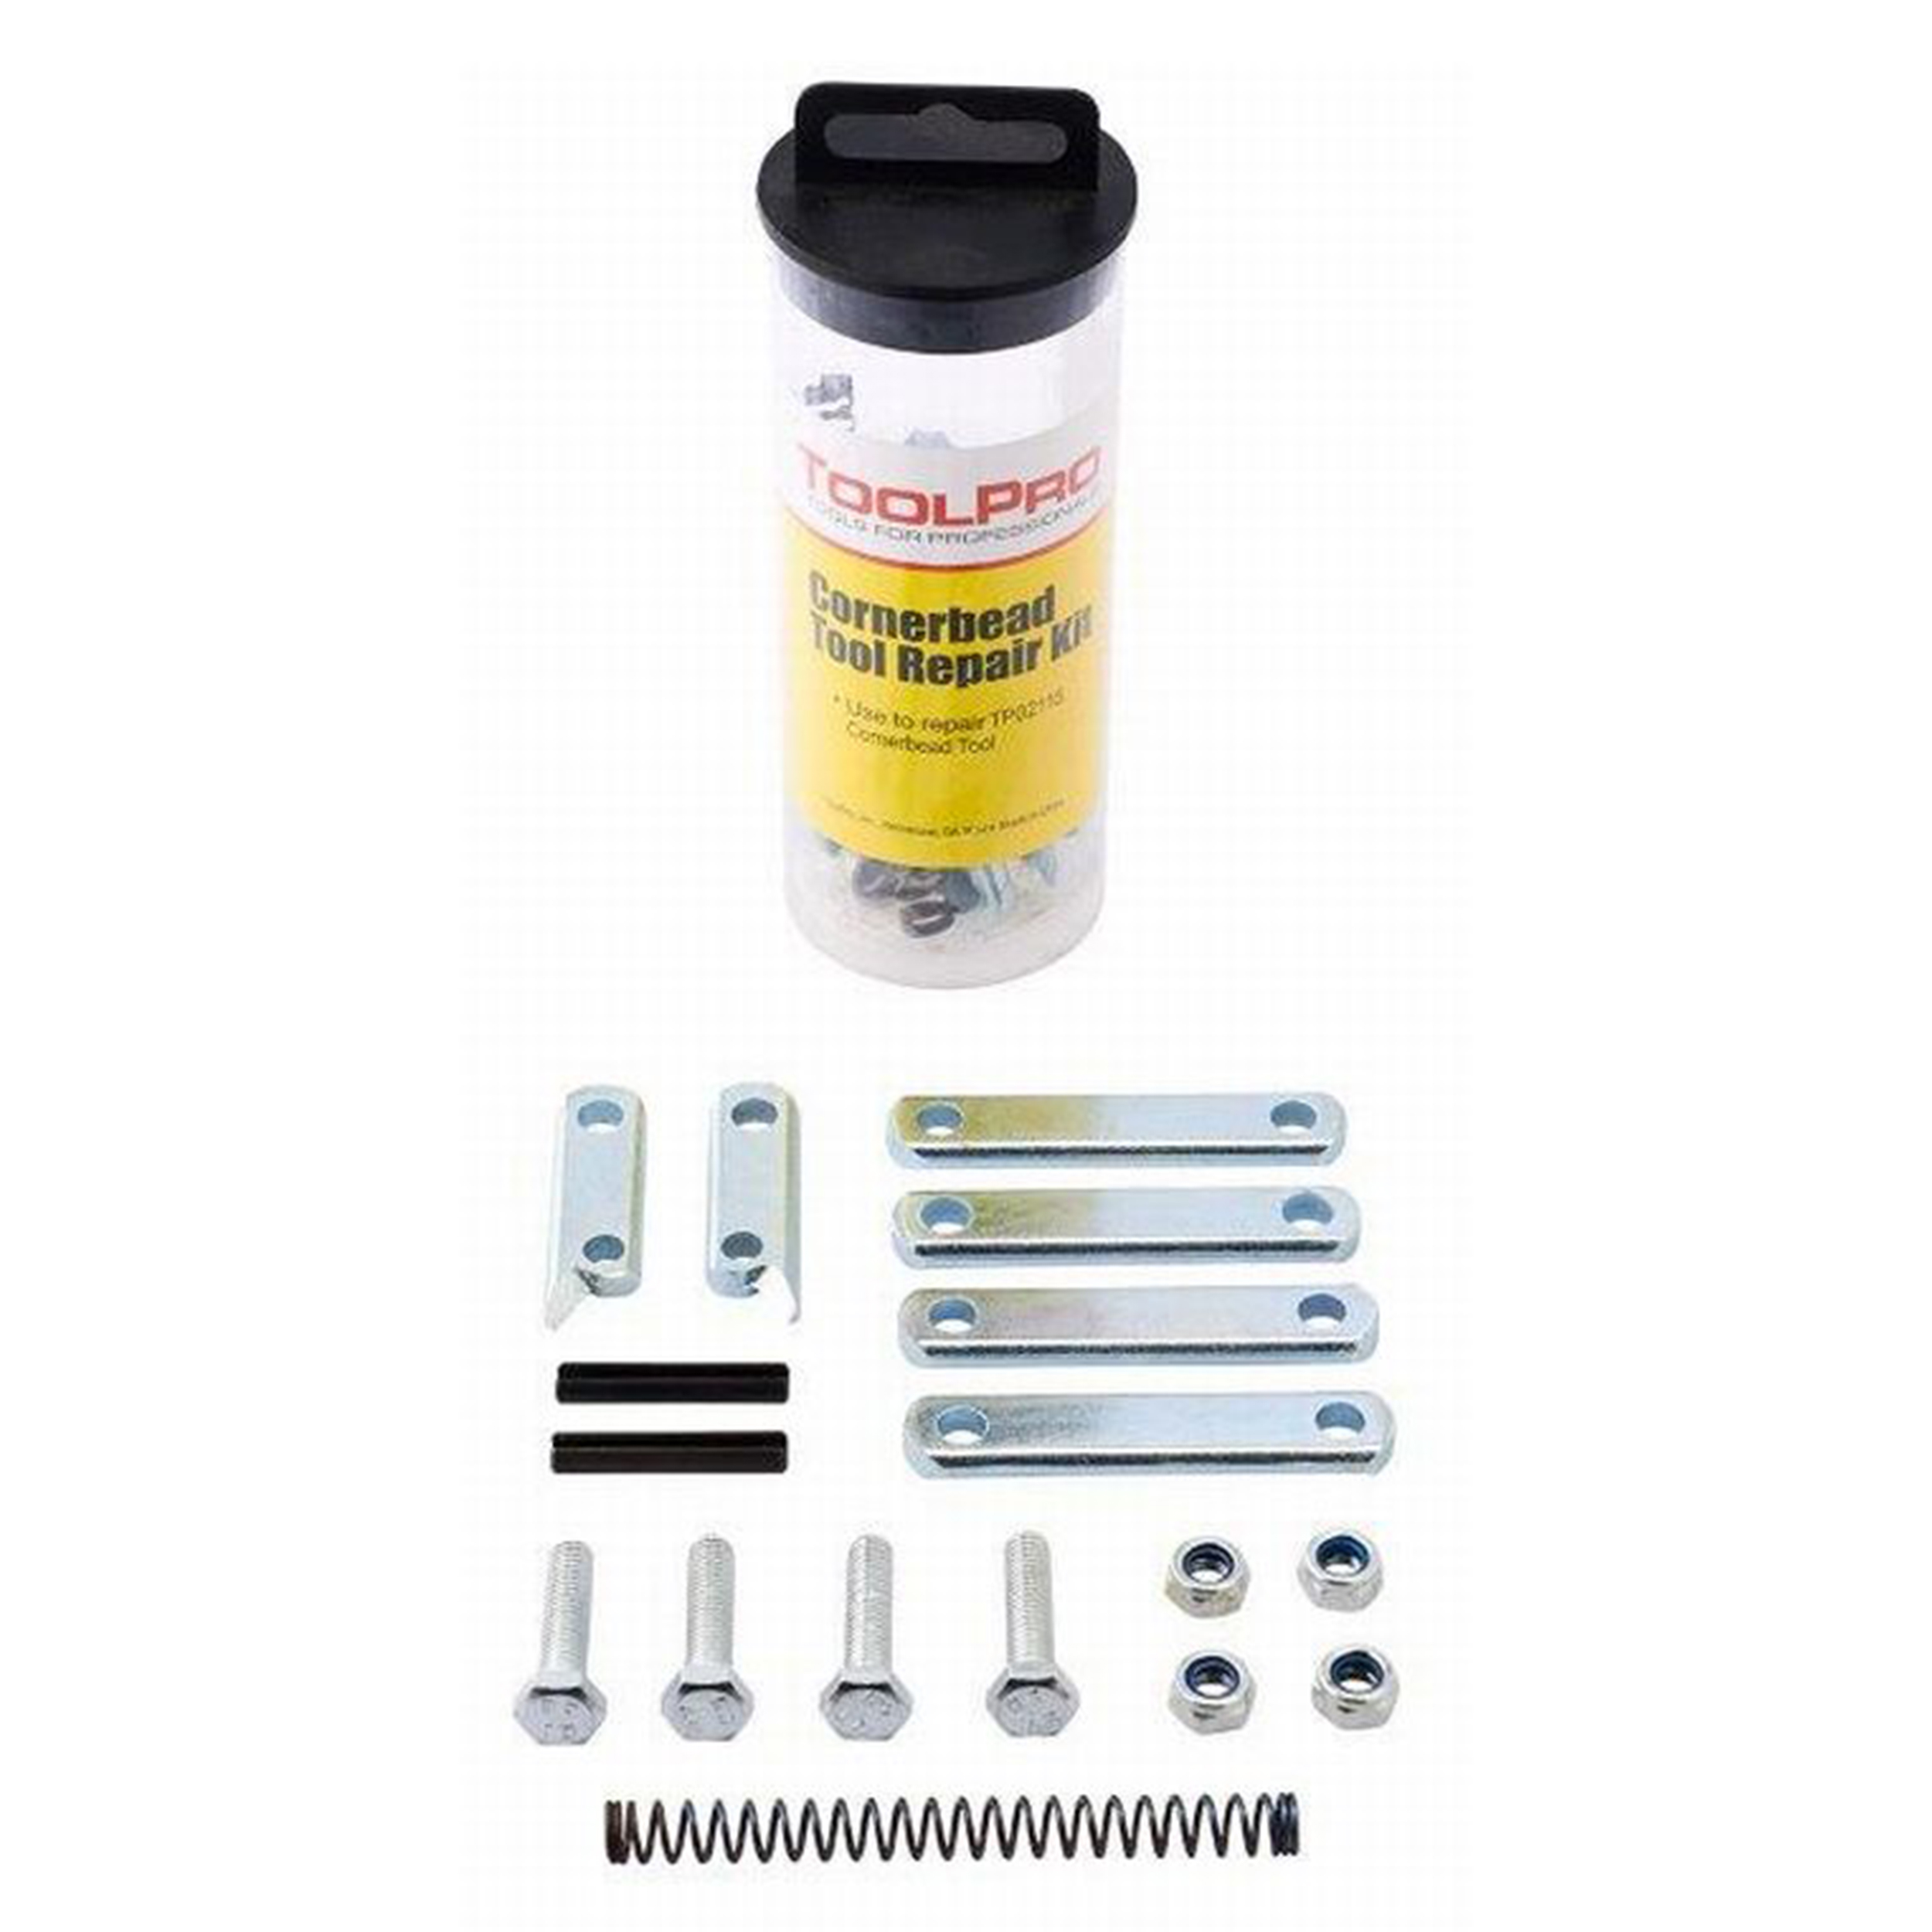 Complete Repair Kit For Cornerbead Crimping Tool